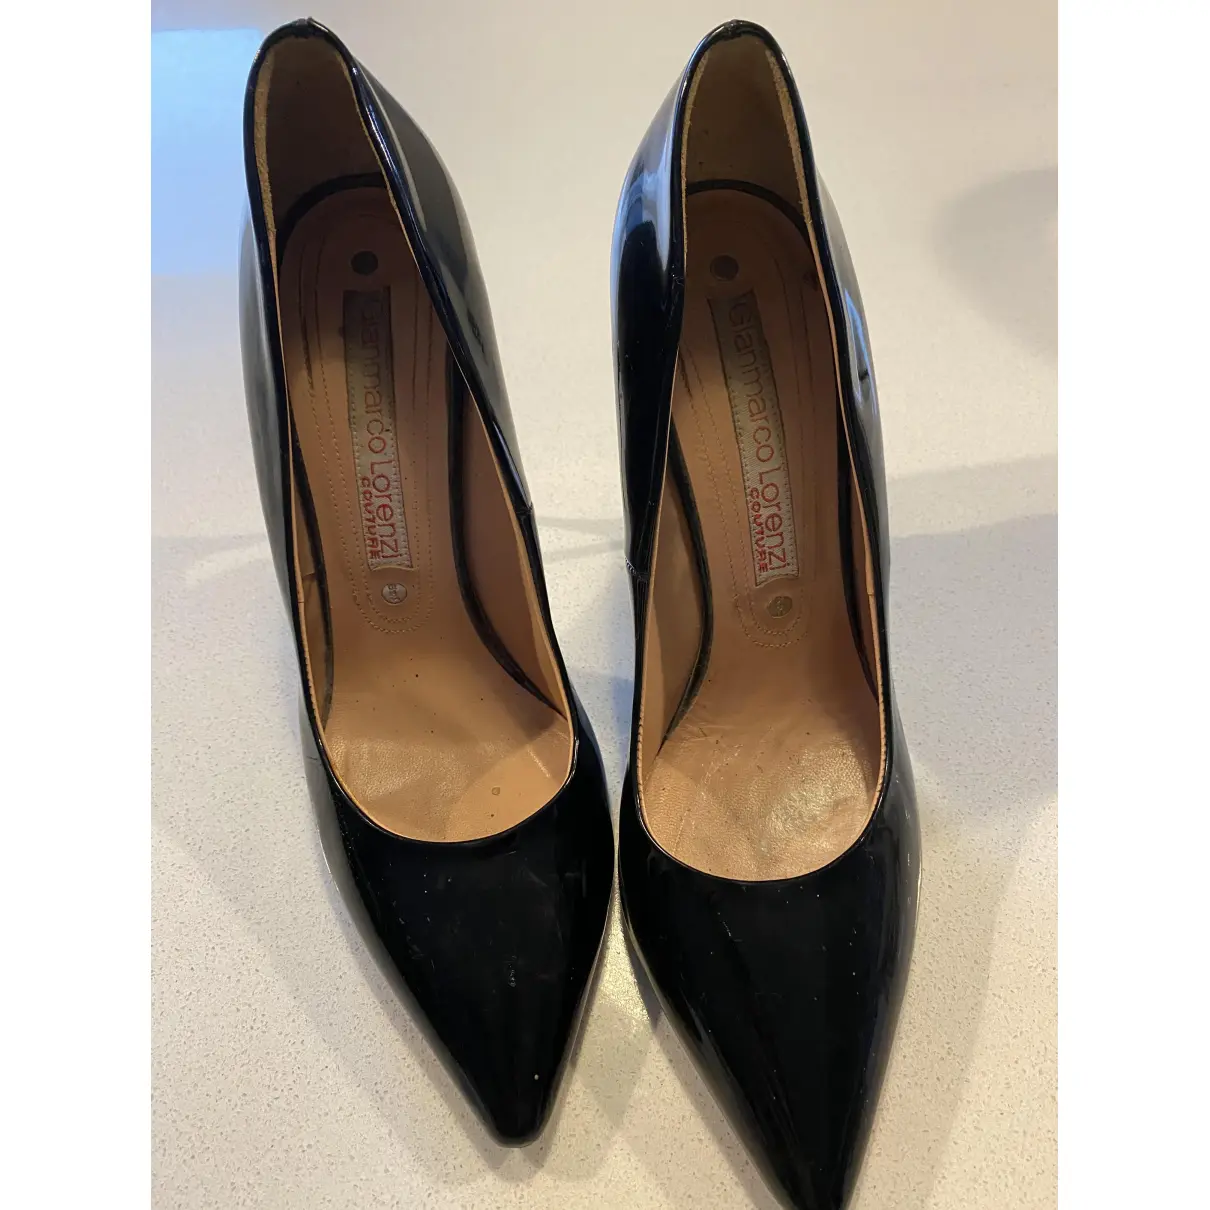 Buy Gianmarco Lorenzi Leather heels online